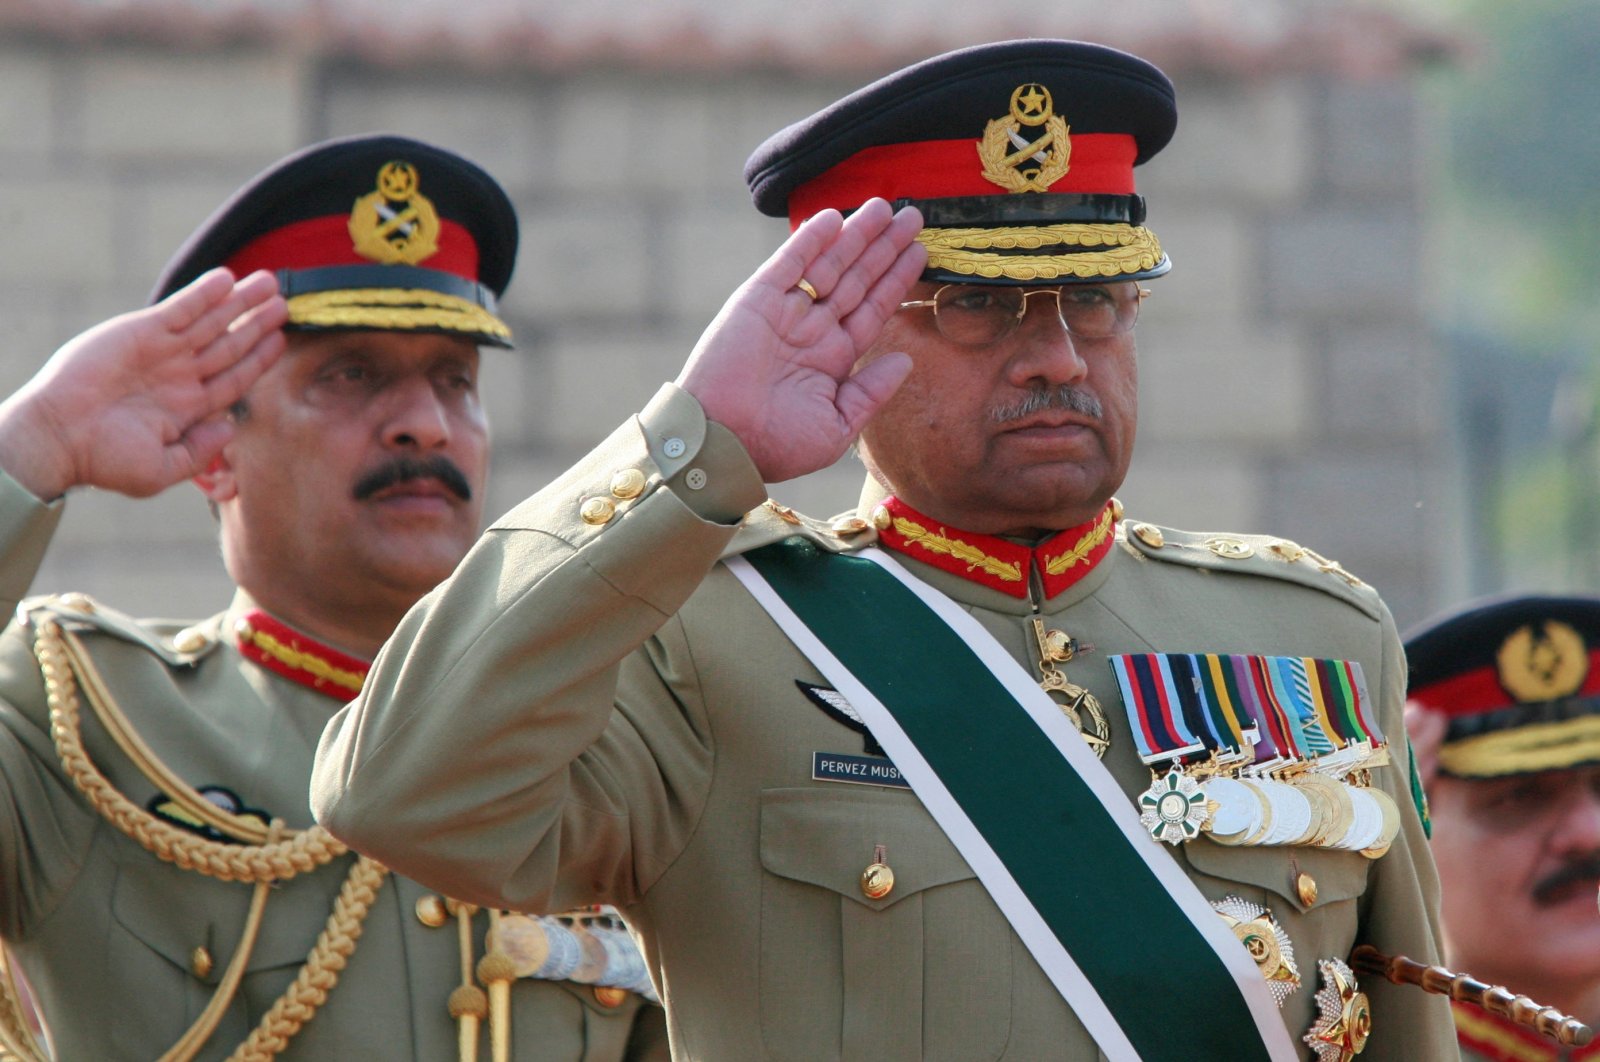 Mantan penguasa militer Pakistan Pervez Musharraf meninggal di pengasingan Dubai